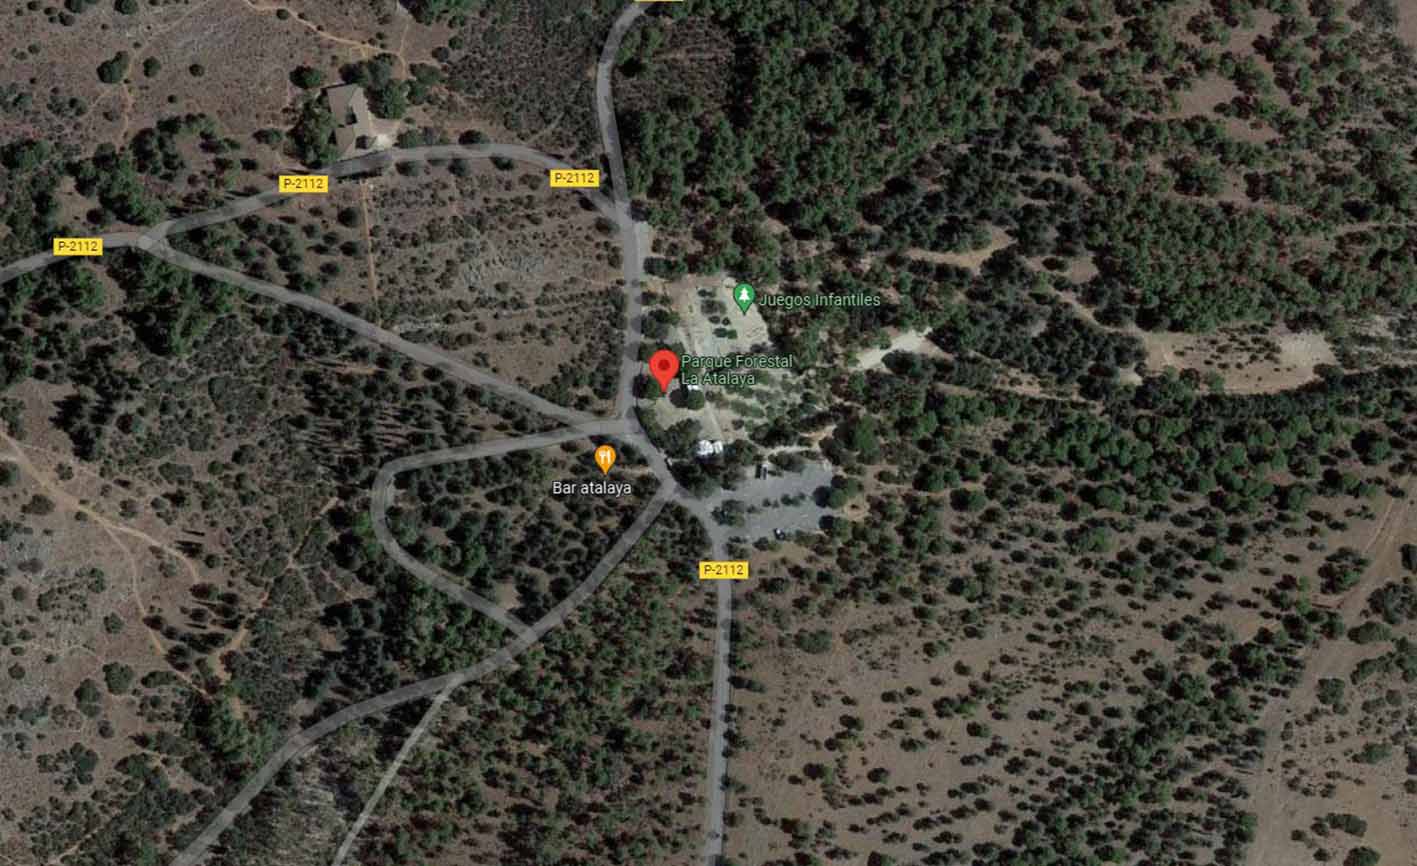 Los hechos ocurrieron en una zona residencial del Parque Forestal La Atalaya. Imagen: Google Maps.